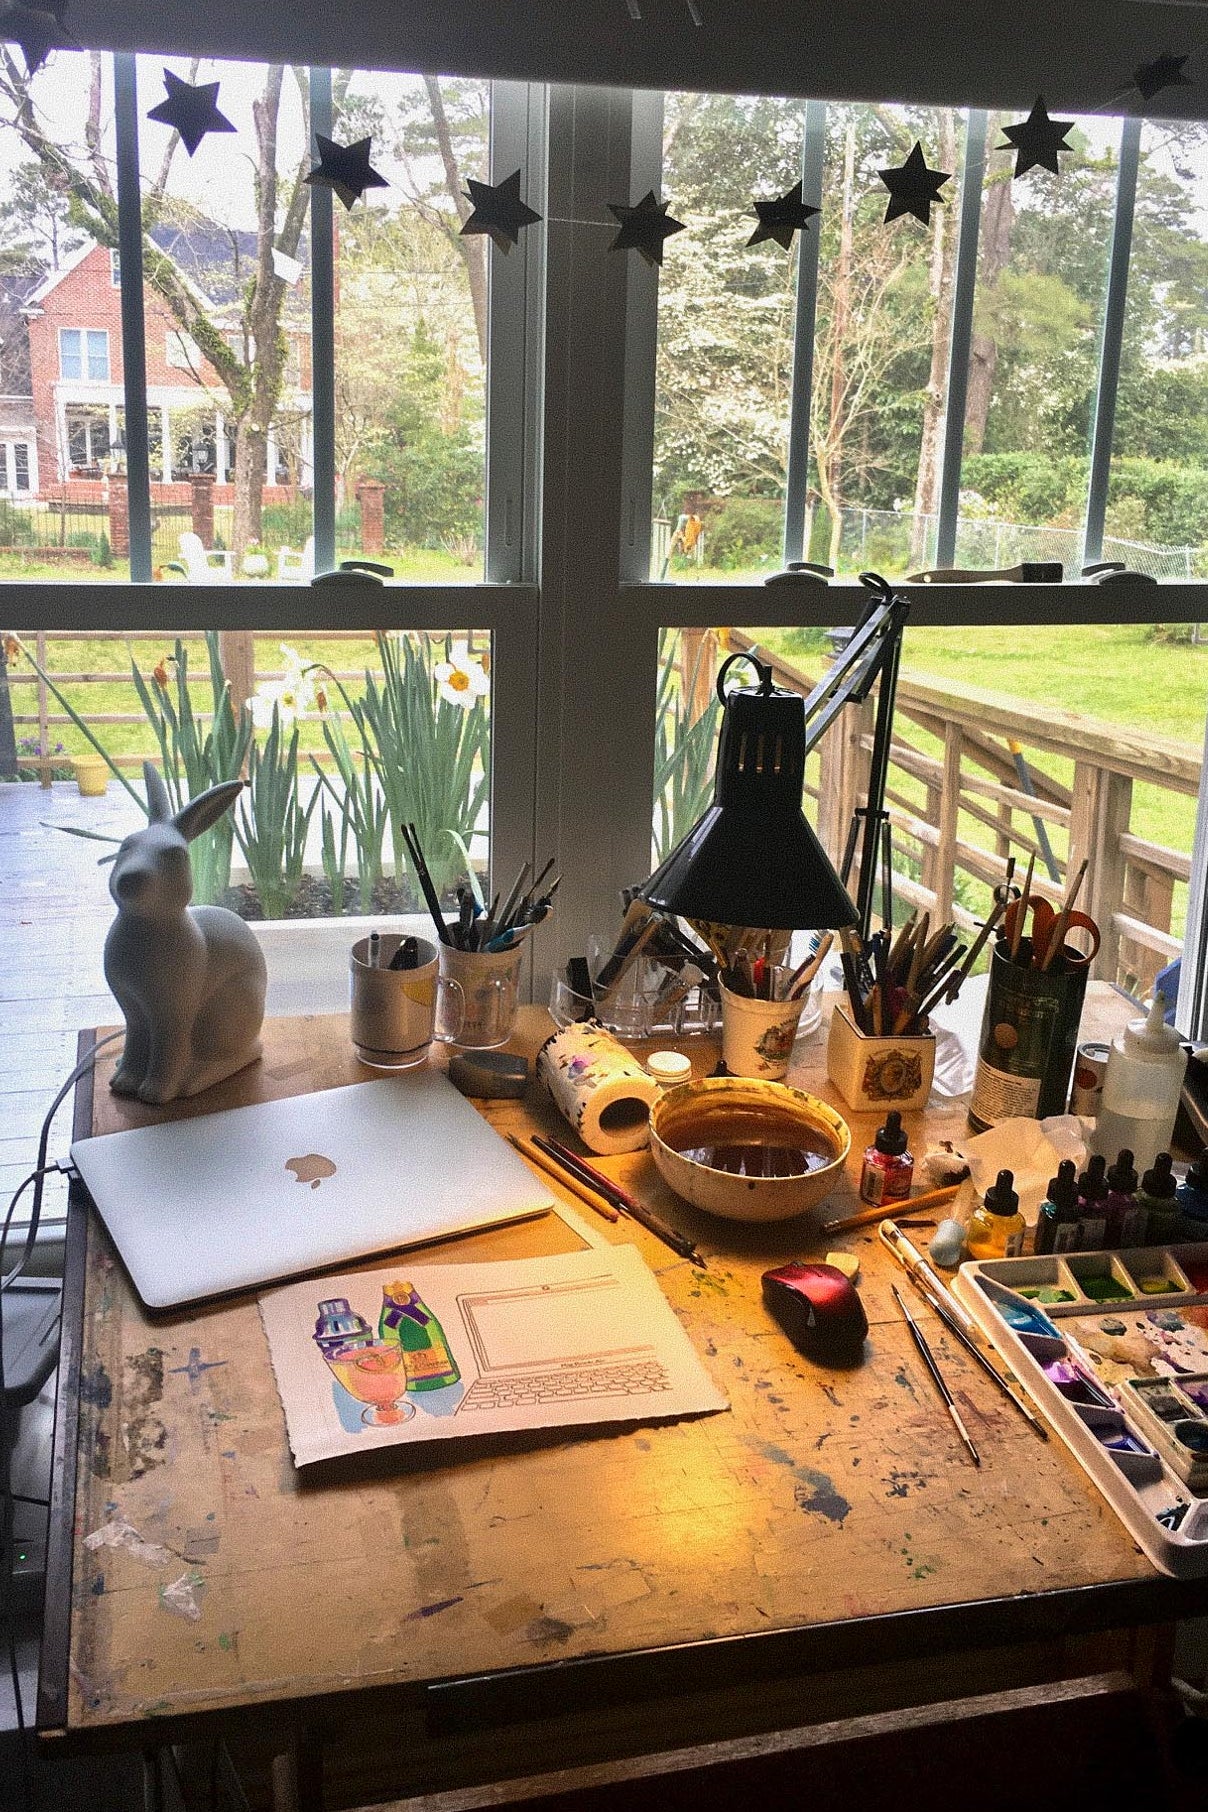 View from an artist's desk.